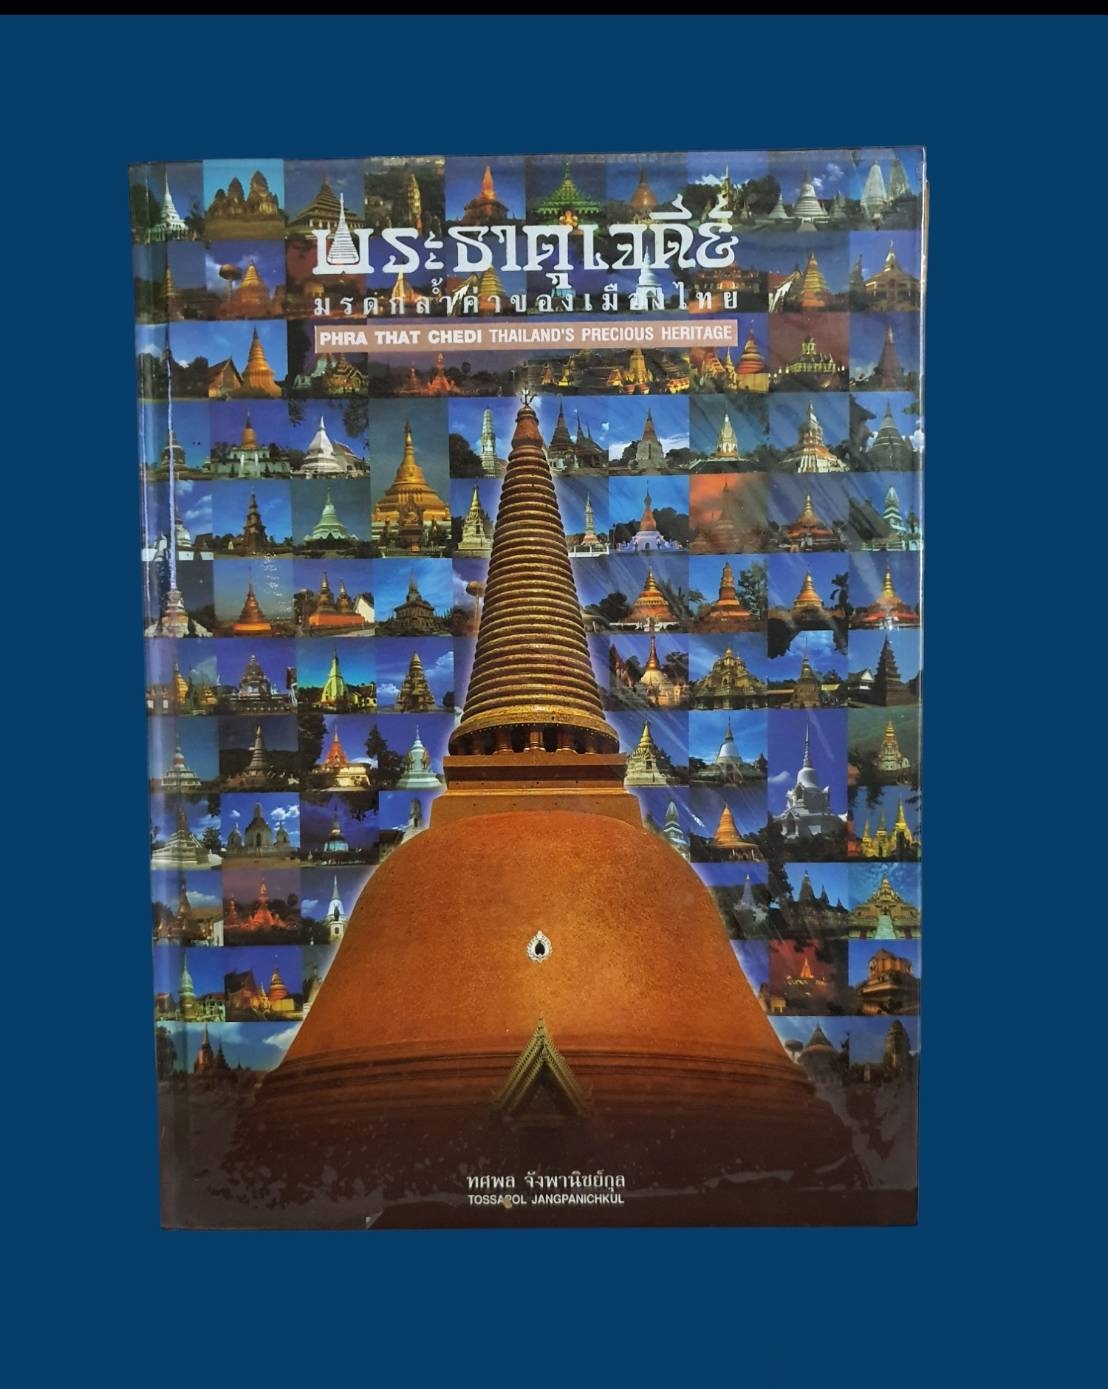 หนังสือพระธาตุเจดีย์ มรดกล้ำค่าของเมืองไทย โดย ทศพล จังพาณิชย์กุล พิมพ์ปี 2546 มือสอง สภาพสมบูรณ์ รูปที่ 1